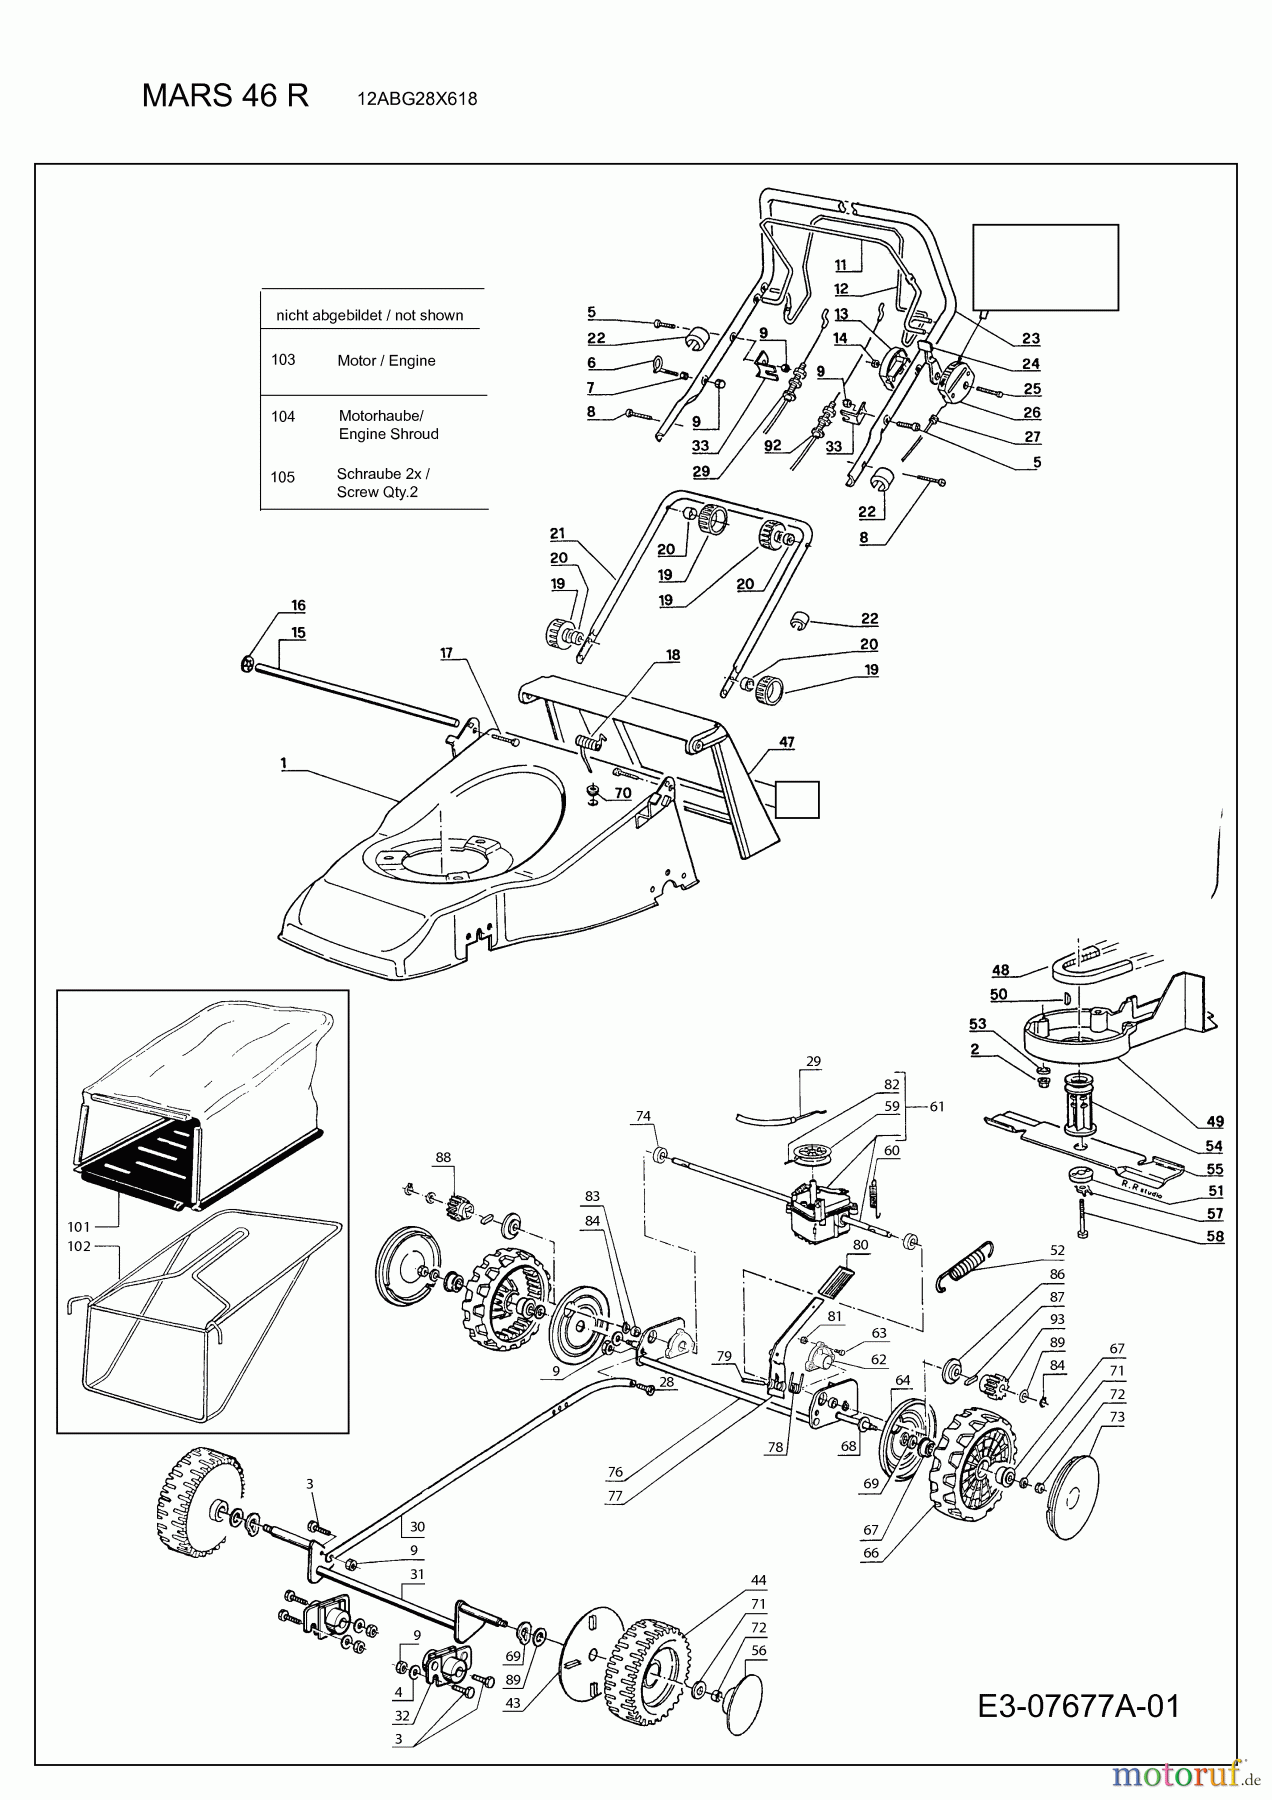  Rasor Motormäher mit Antrieb MARS 46 R 12ABG28X618  (2012) Grundgerät